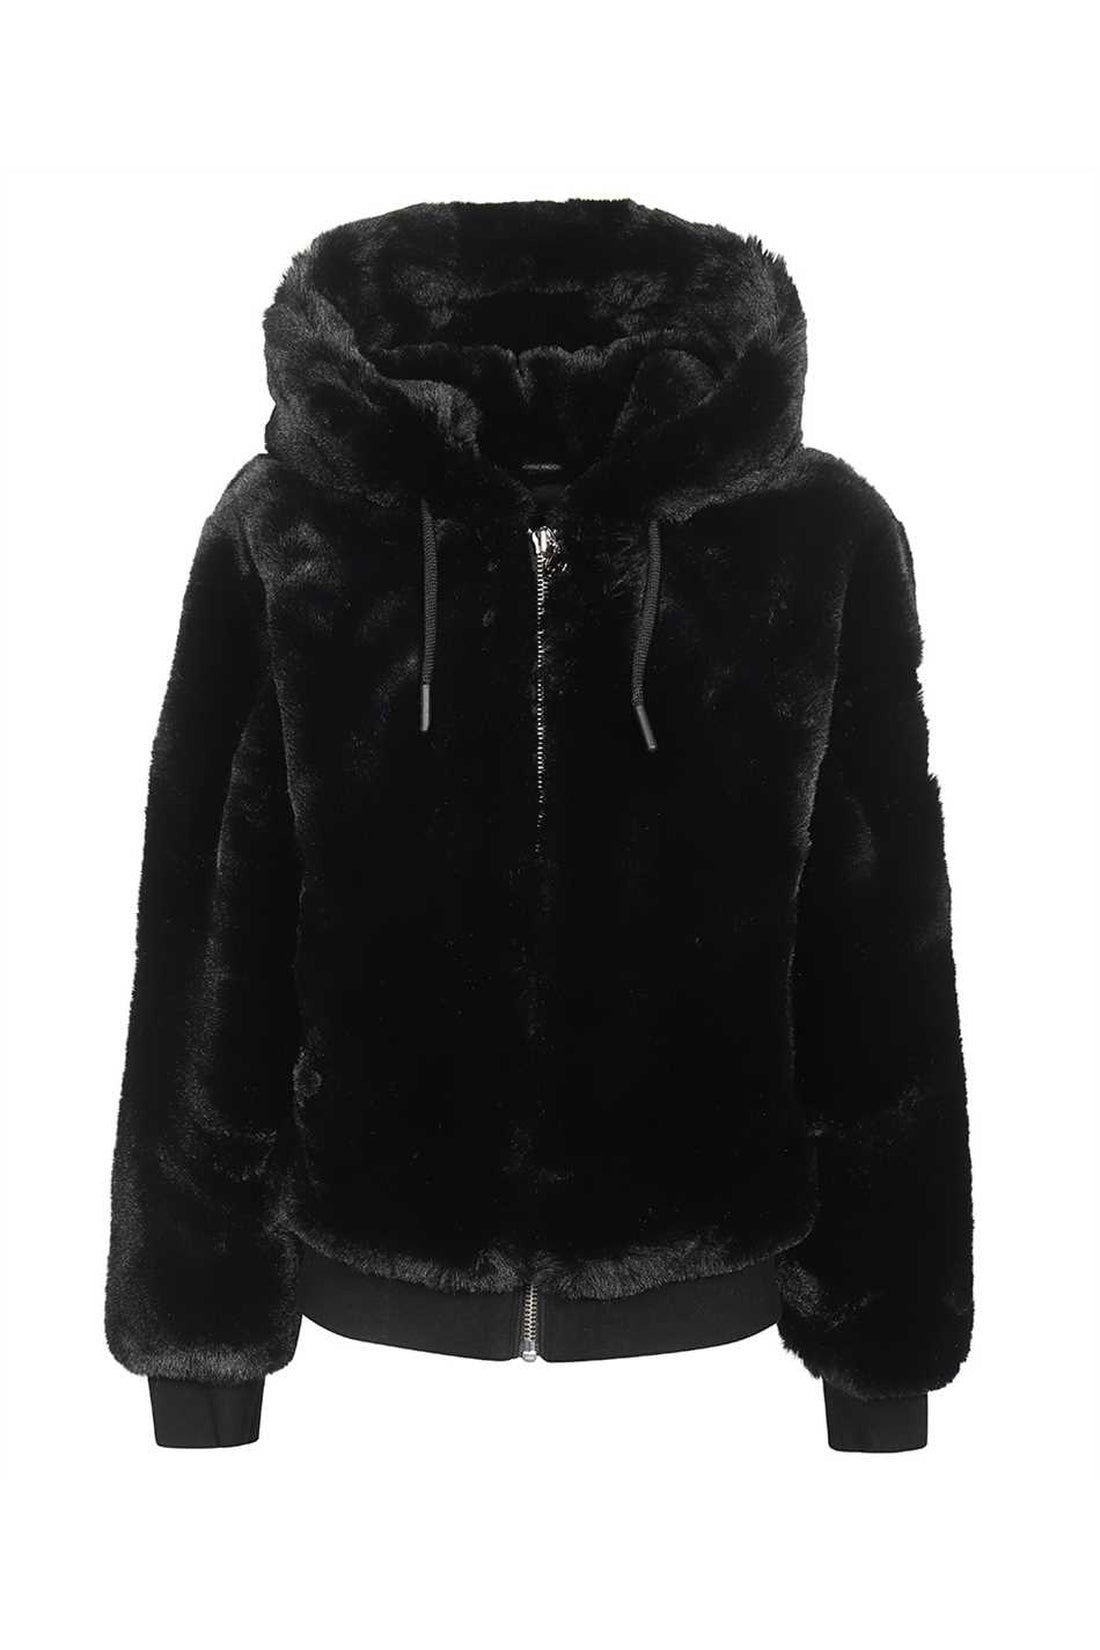 Moose Knuckles-OUTLET-SALE-Bunny faux fur jacket-ARCHIVIST